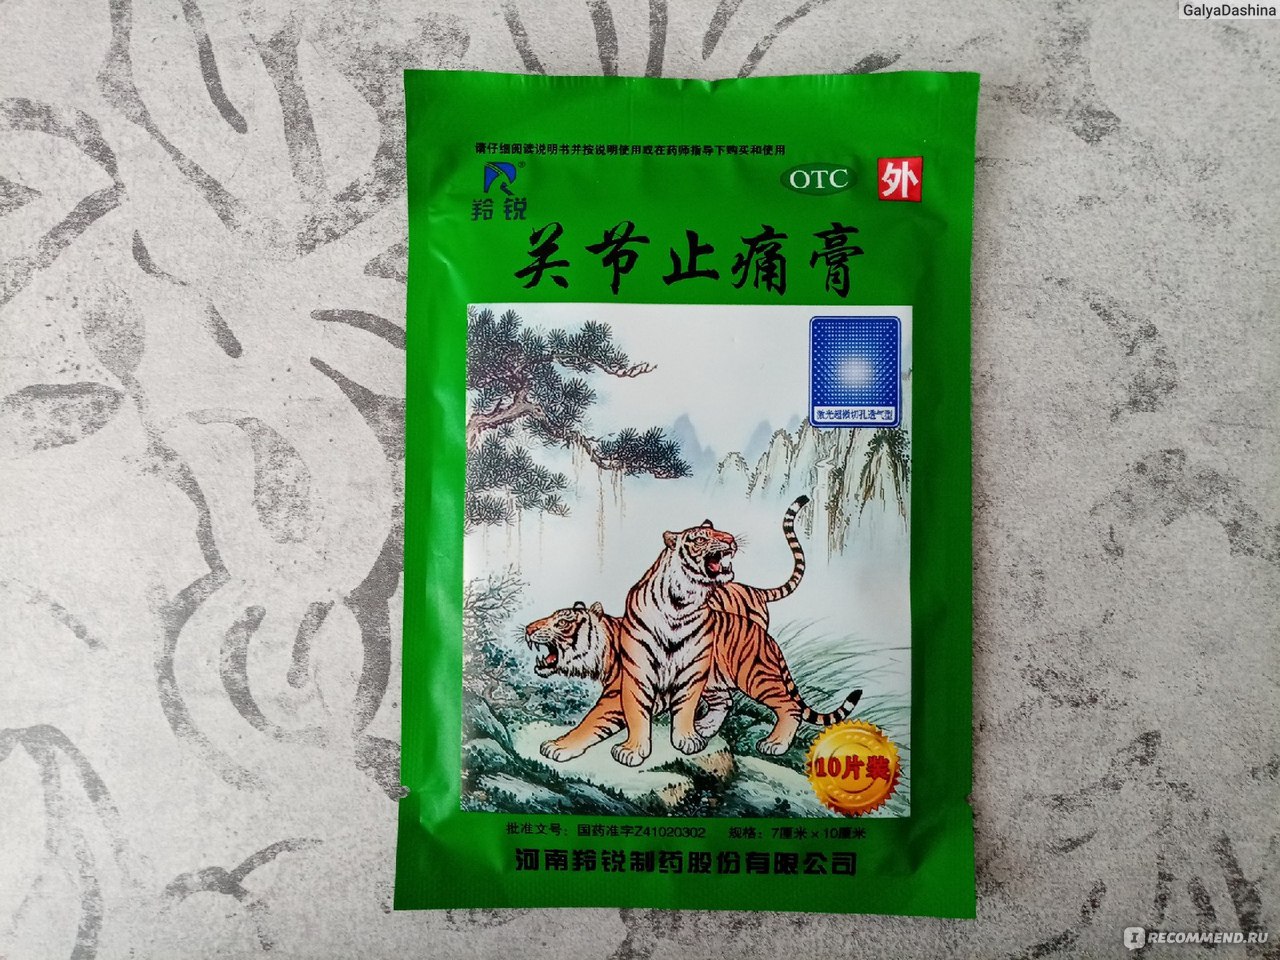 Пластырь TM OTC зеленый тигр Guanjie Zhitong Gao